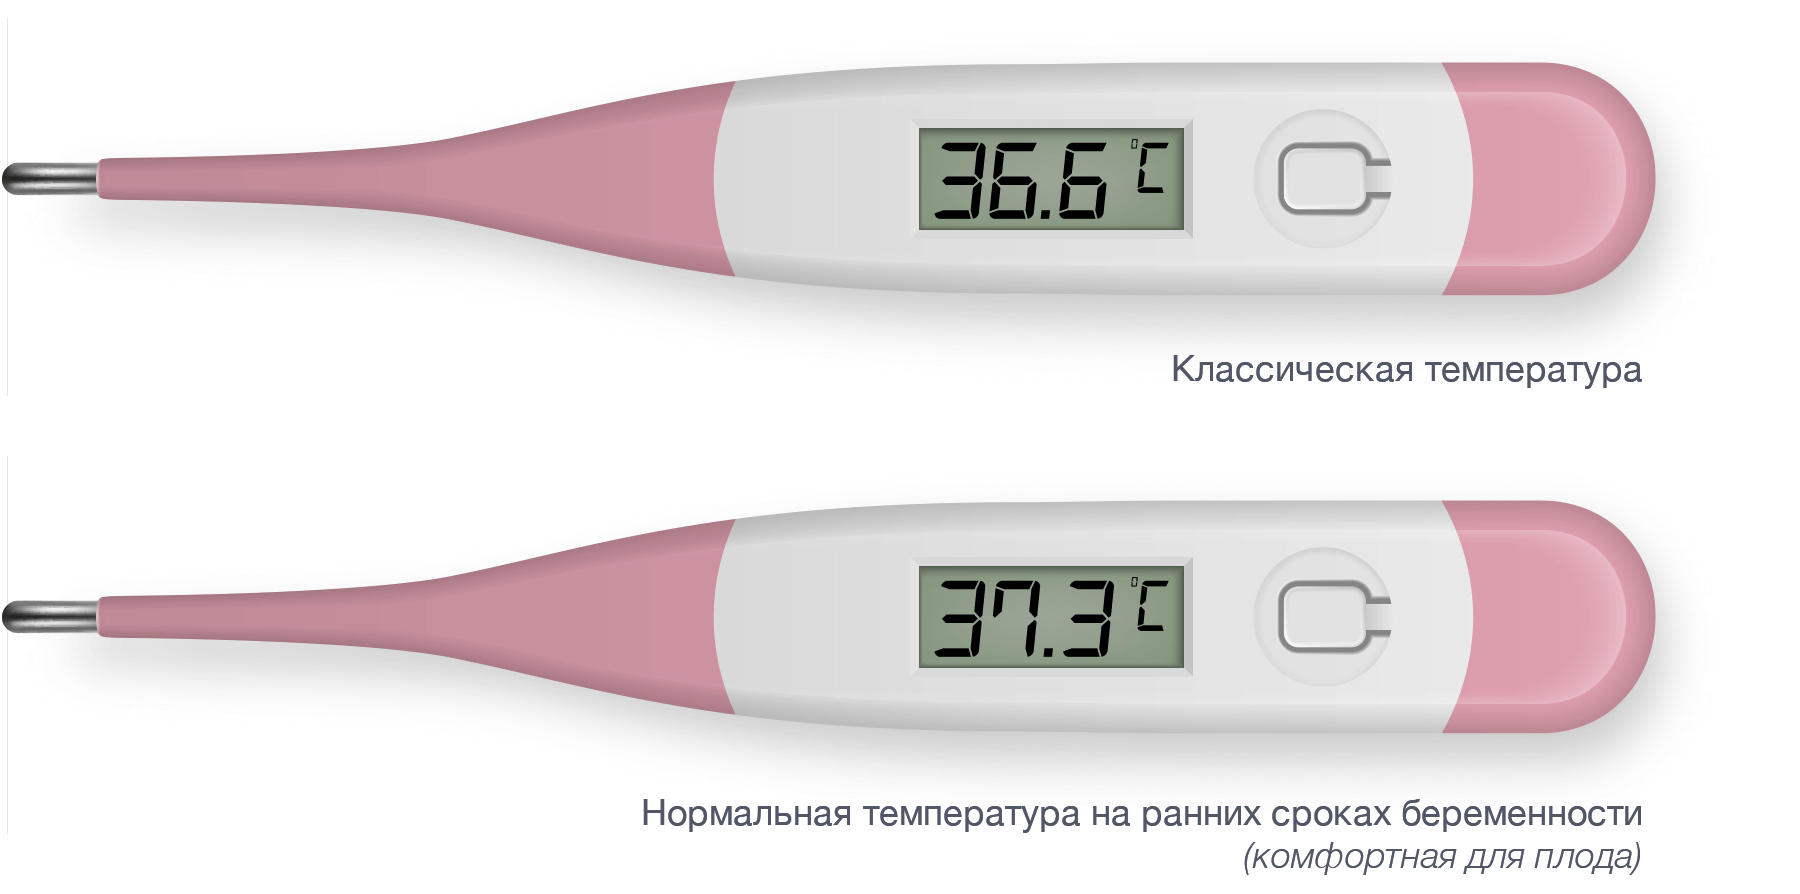 Температура при беременности